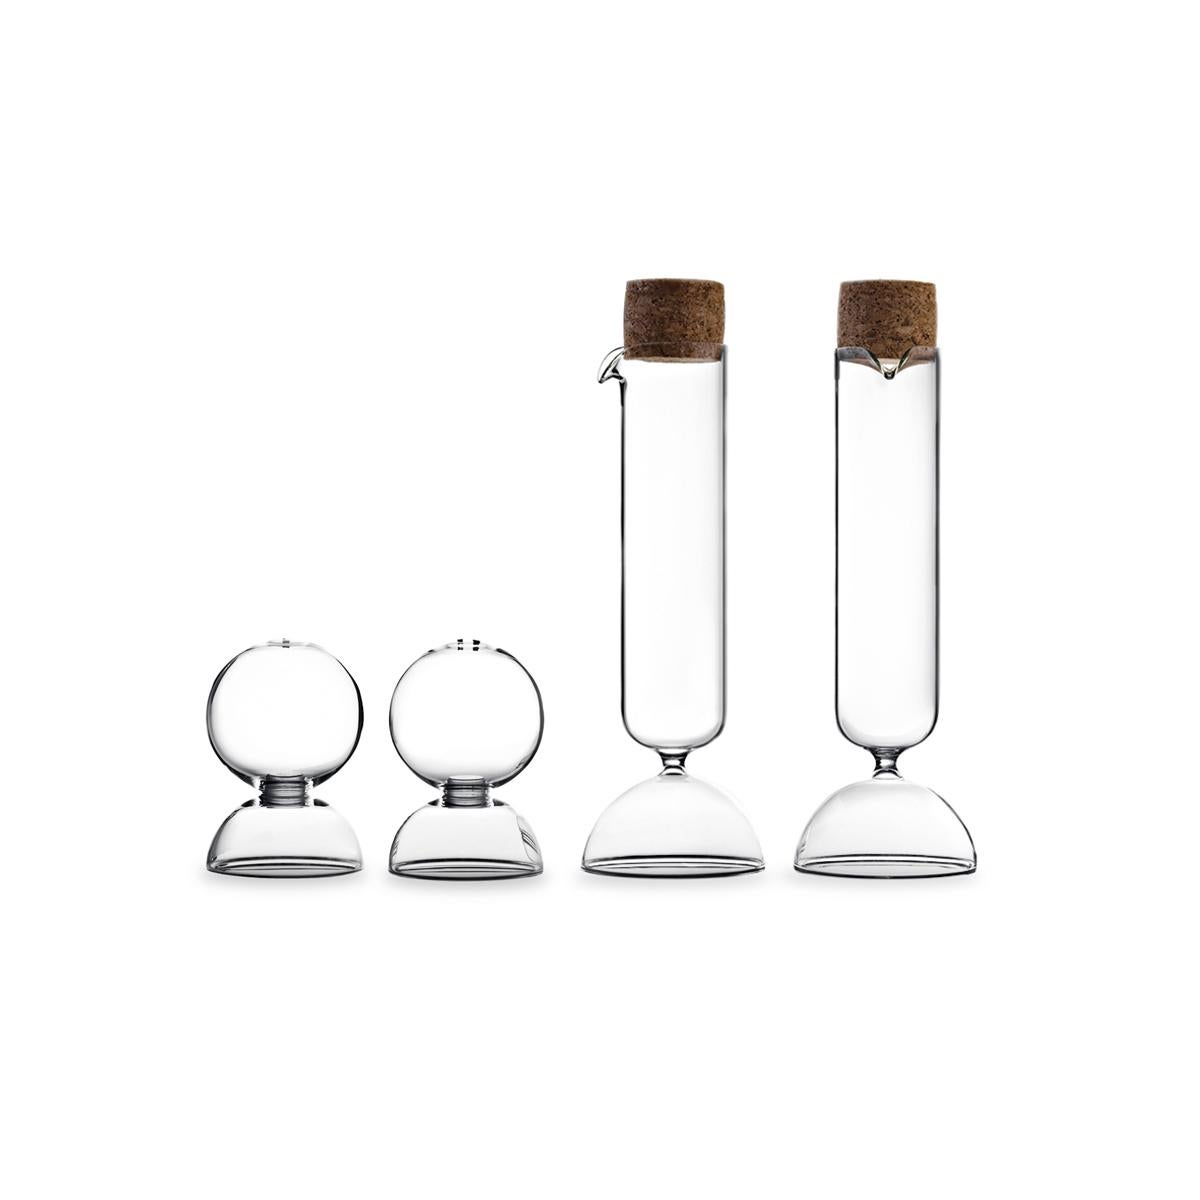 Bubble, entworfen von Gordon Guillaumier, ist ein Öl- und Essigspender-Set aus transparentem mundgeblasenem Glas mit Korkverschluss.